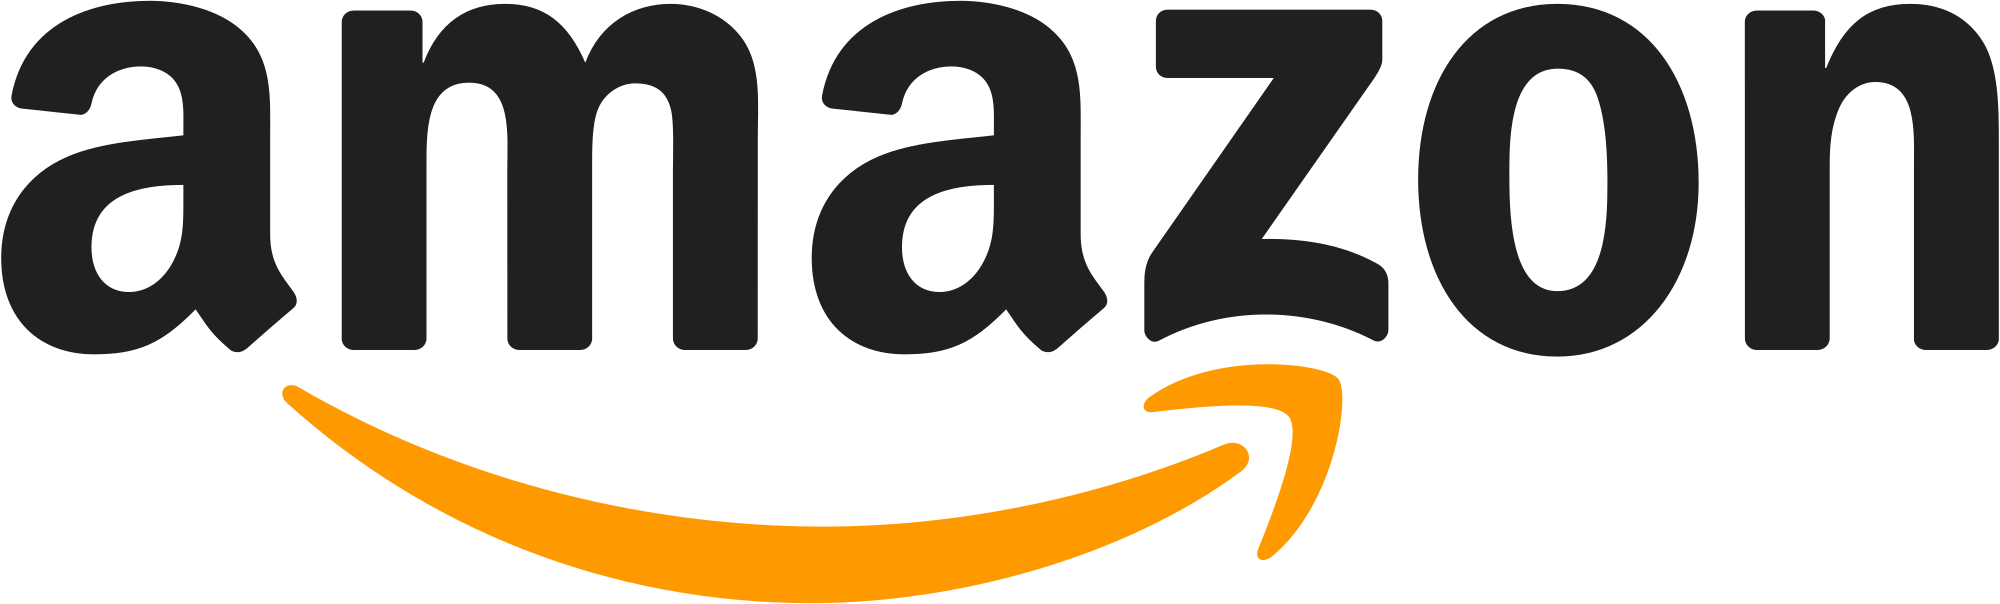 Amazon логотип PNG - Amazon Logo Transparent Background